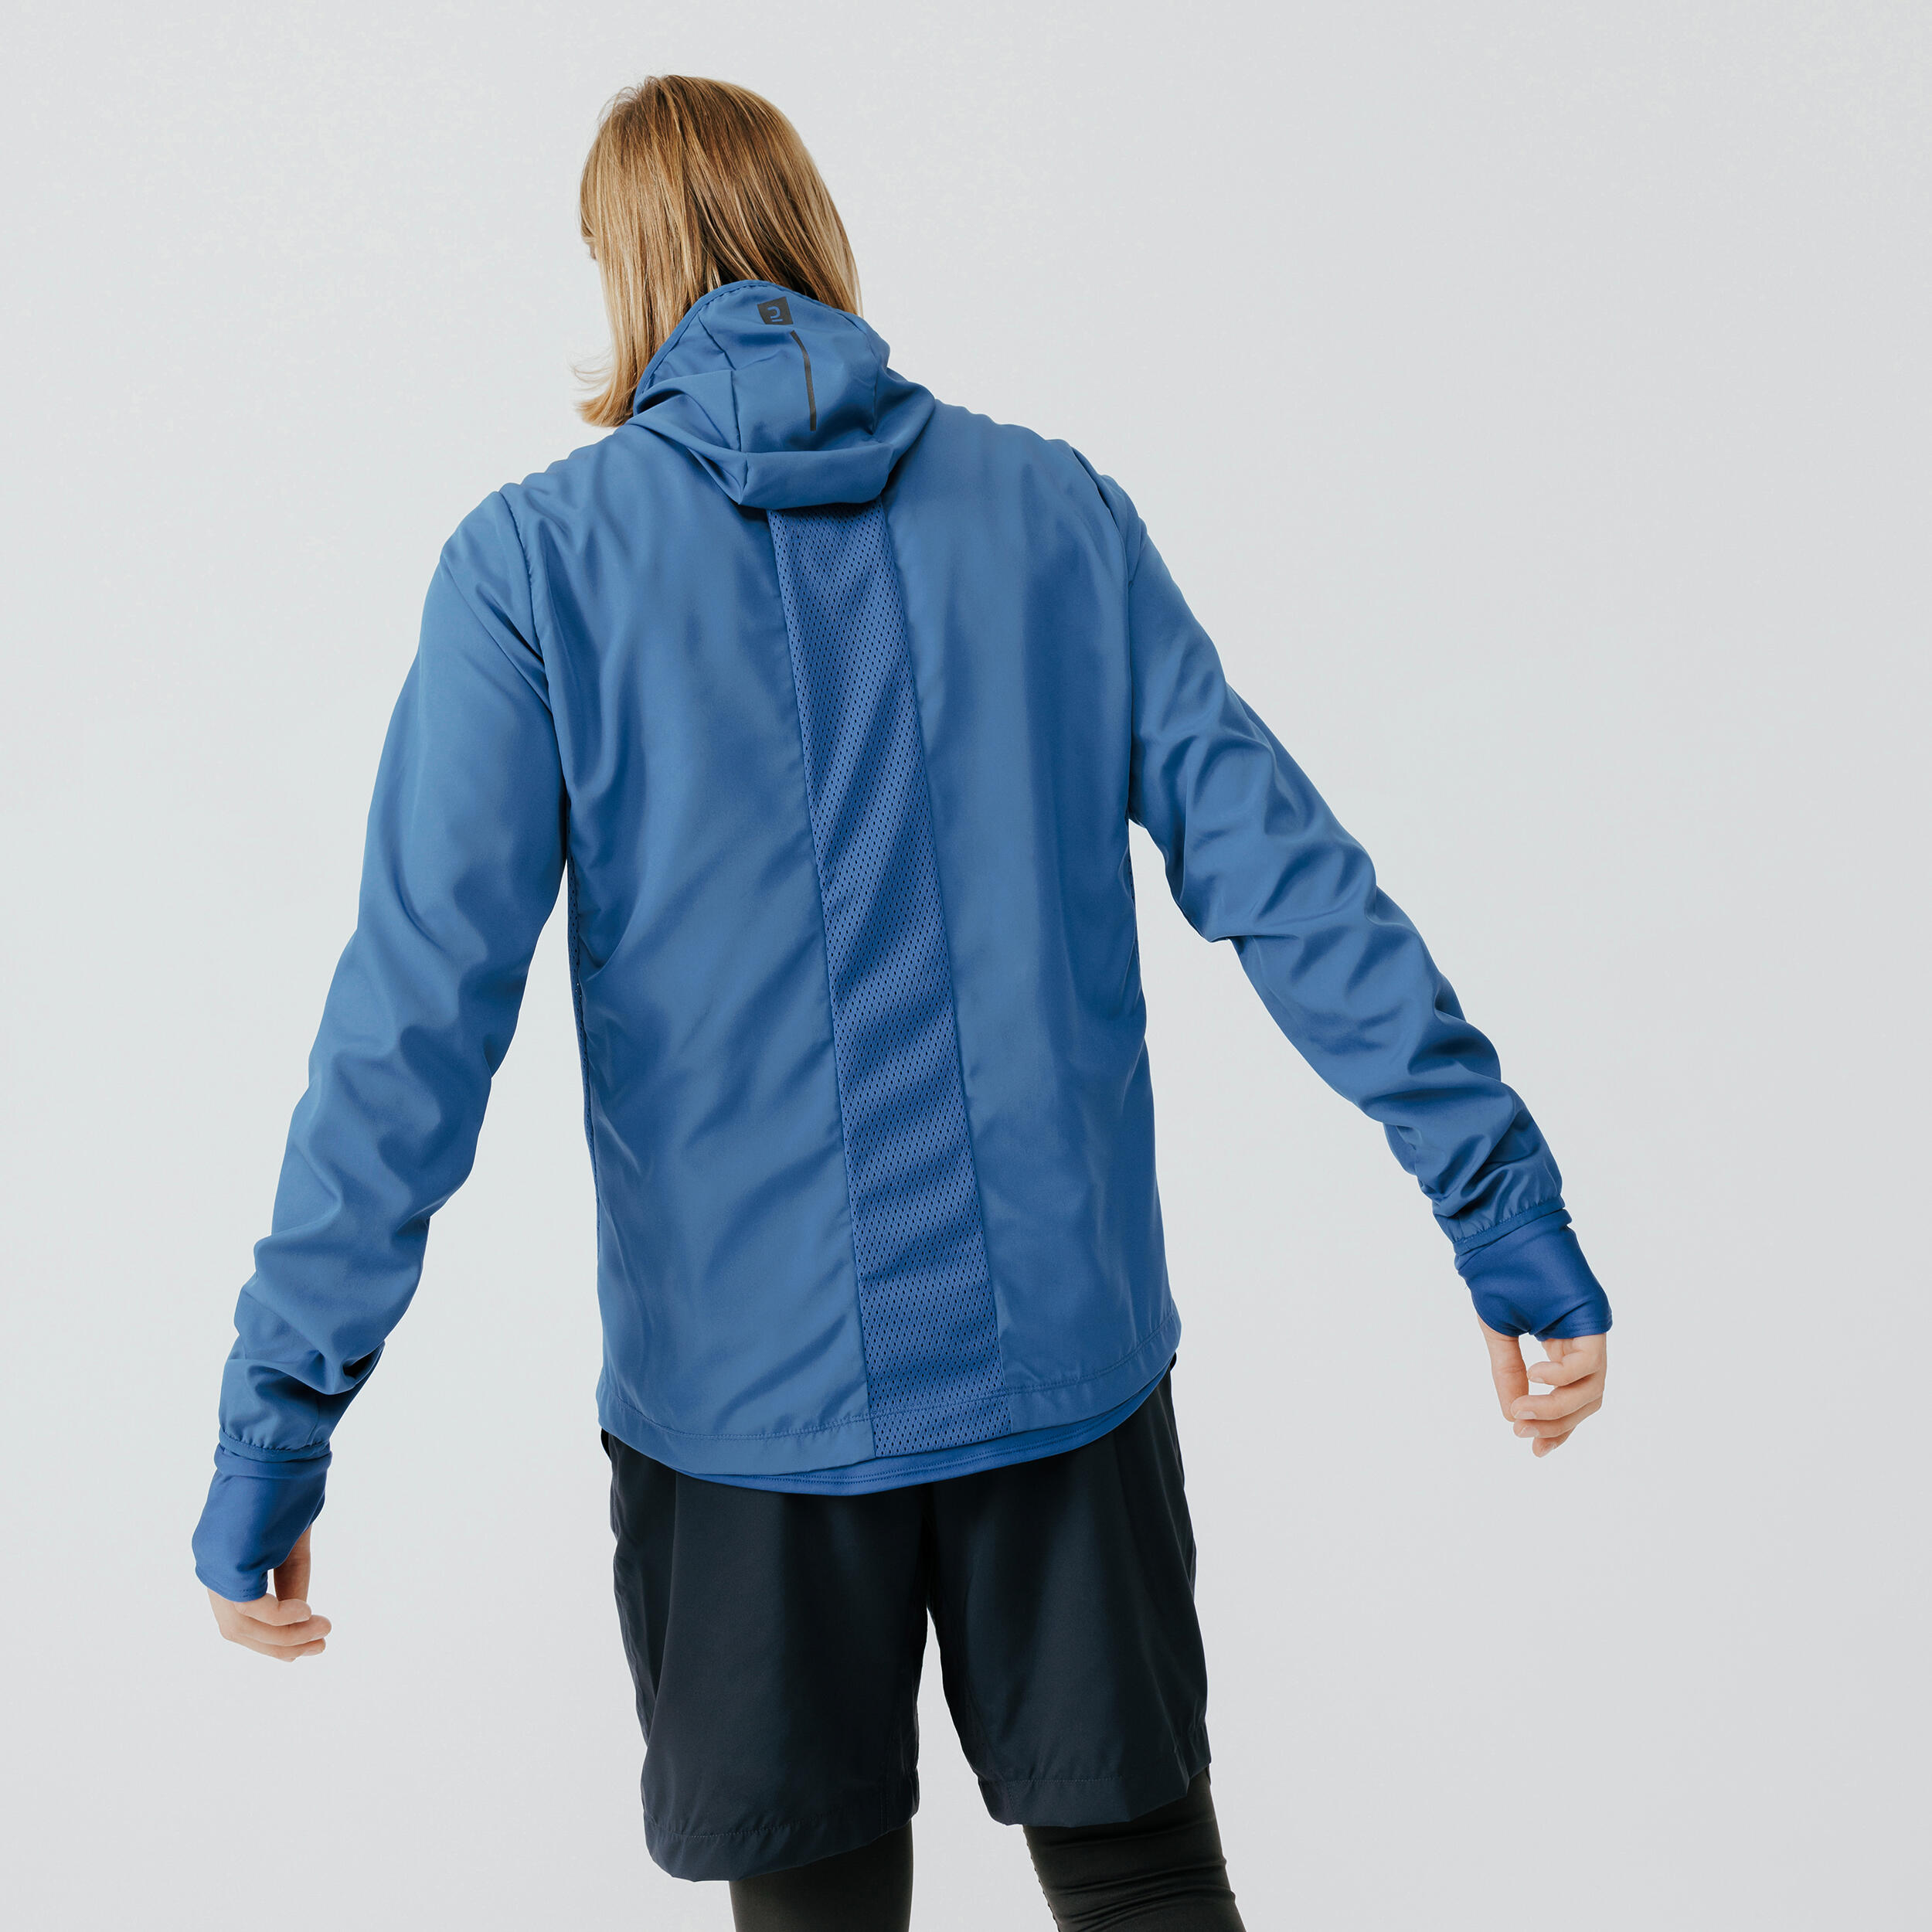 kalenji Decathlon Creation mens full zip running jacket Blue Sz Small